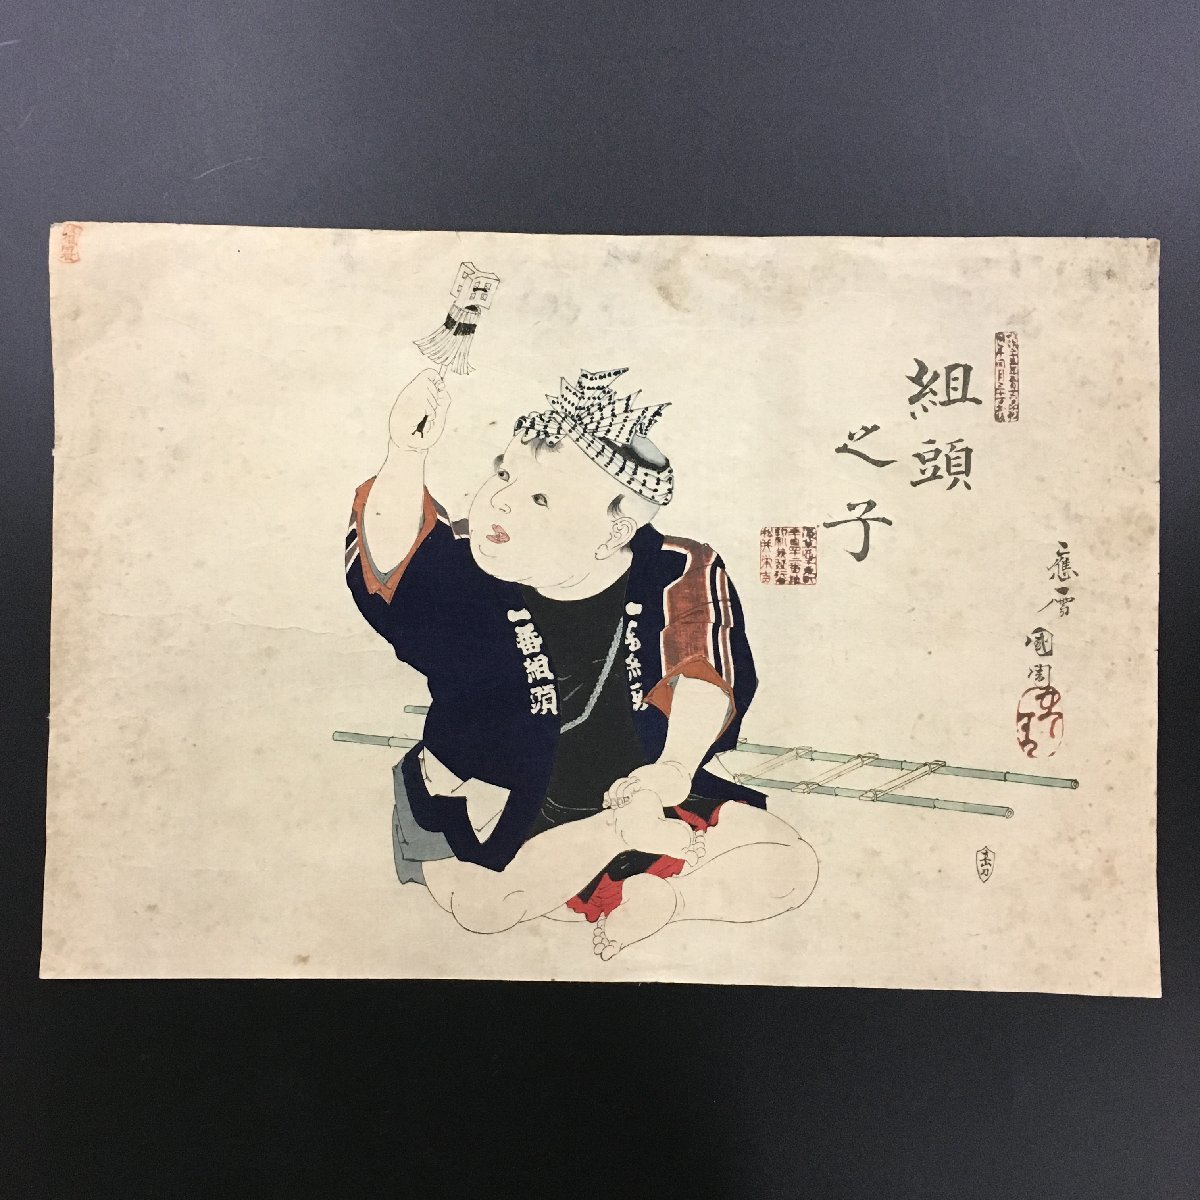 도요하라 구니치카 구미초노코 대형 우키요에 소방관 목판화 니시키에, 그림, 우키요에, 인쇄물, 다른 사람